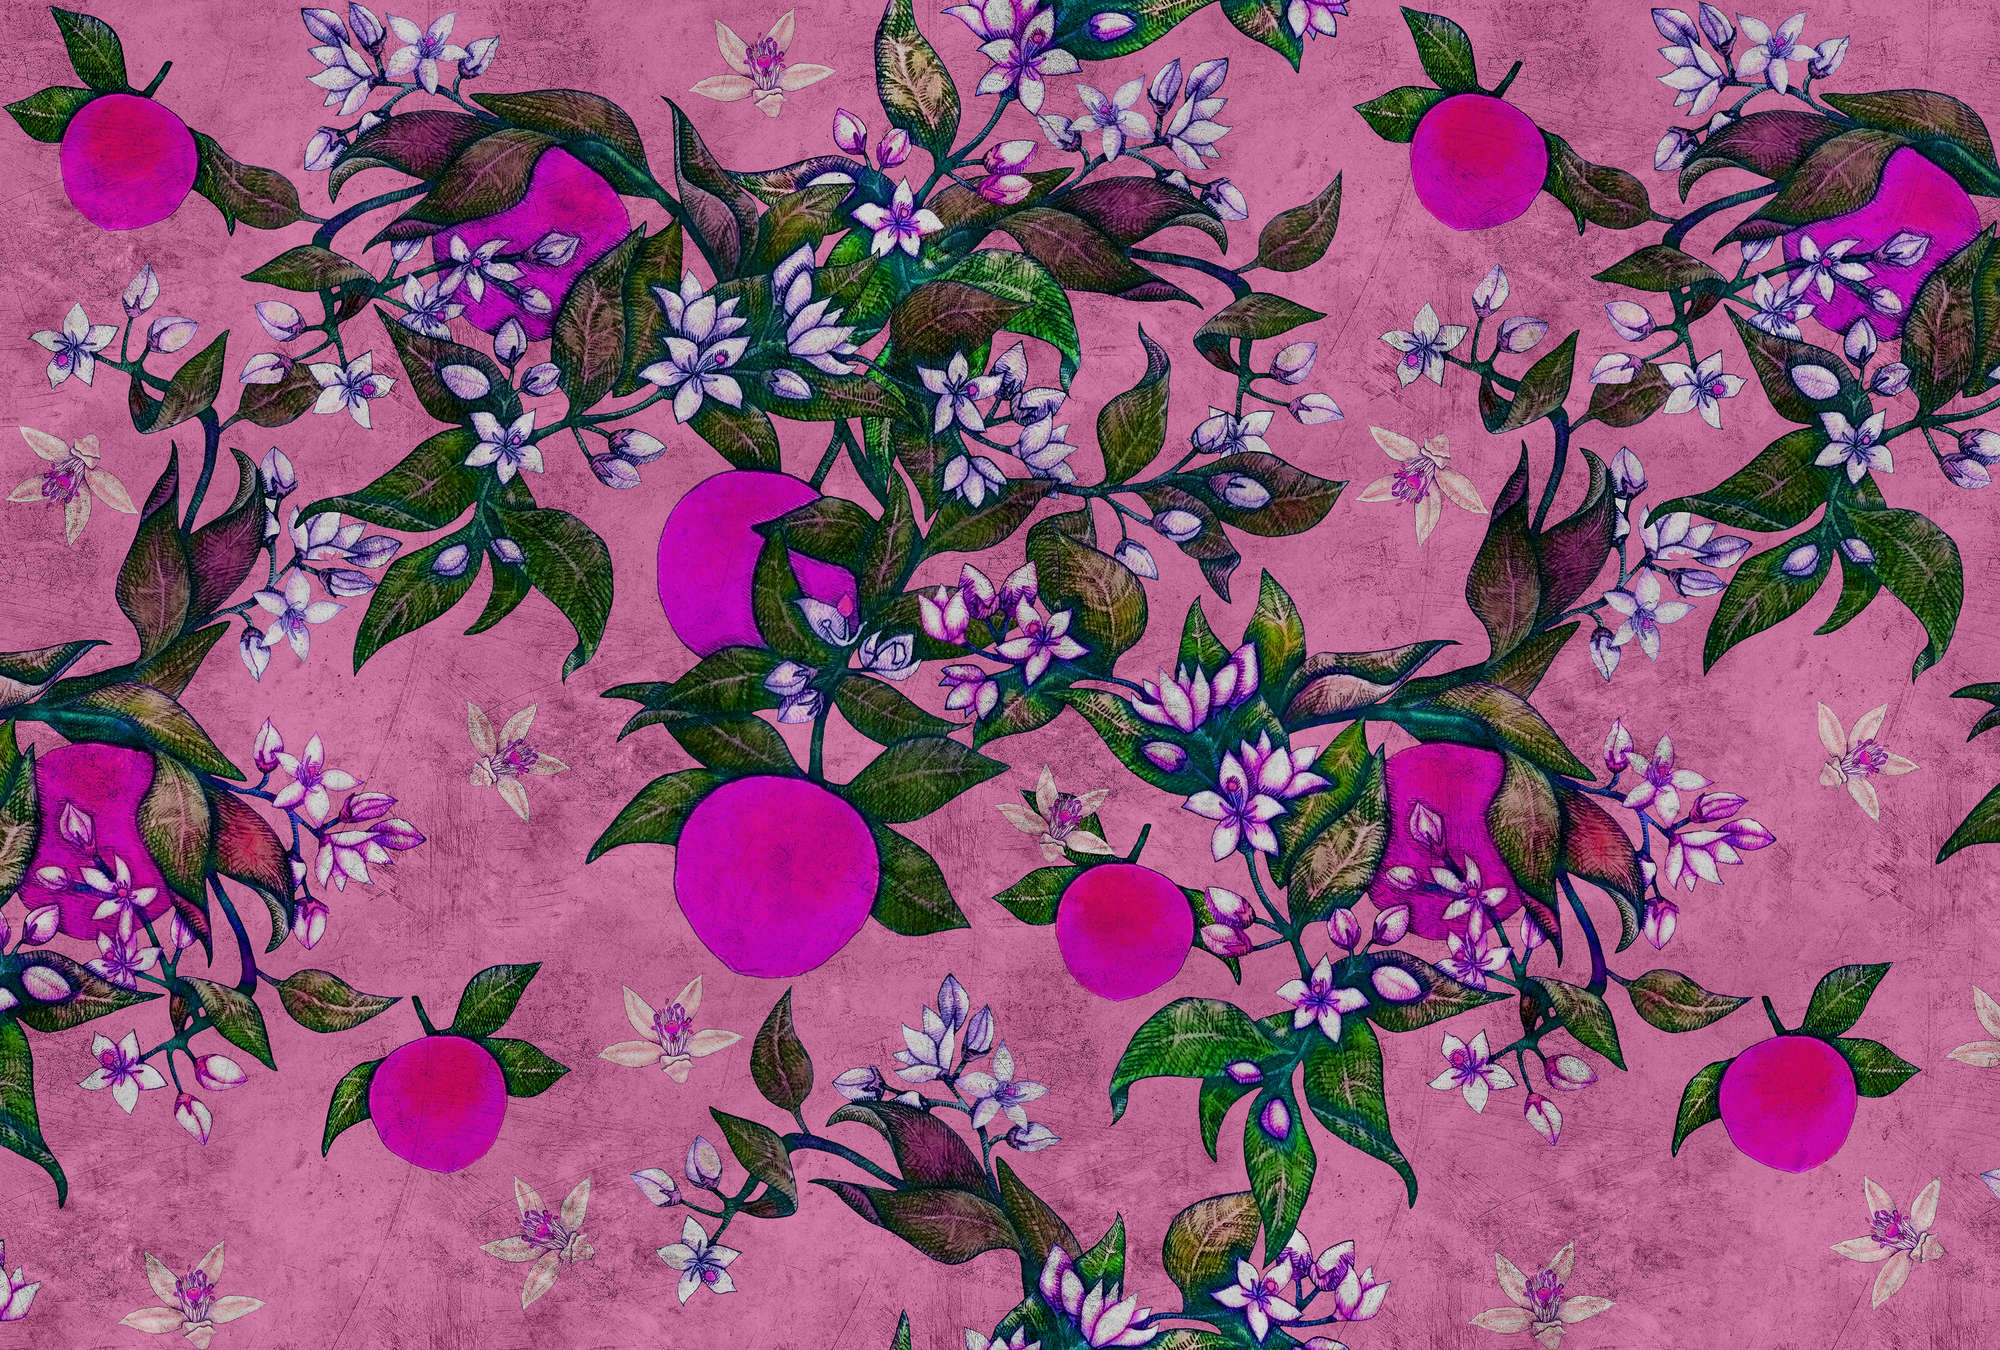             Grapefruit Tree 2 - Papier peint pamplemousse et fleurs à texture rayée - rose, violet | Intissé lisse mat
        